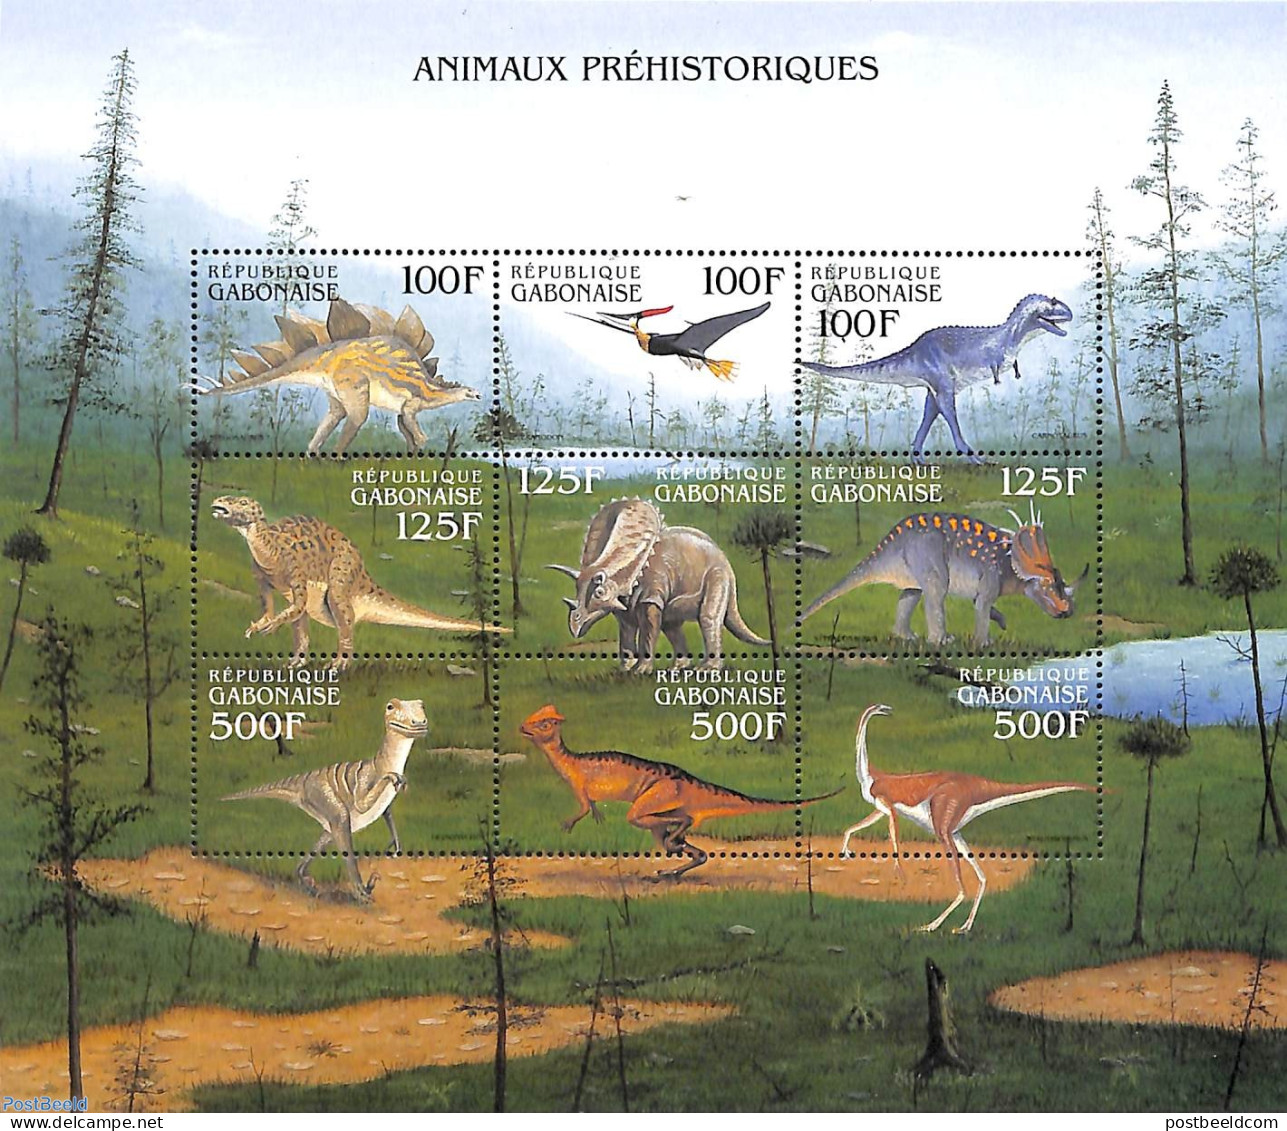 Gabon 2000 Preh. Animals 9v M/s, Stegosaurus, Mint NH, Nature - Prehistoric Animals - Nuovi